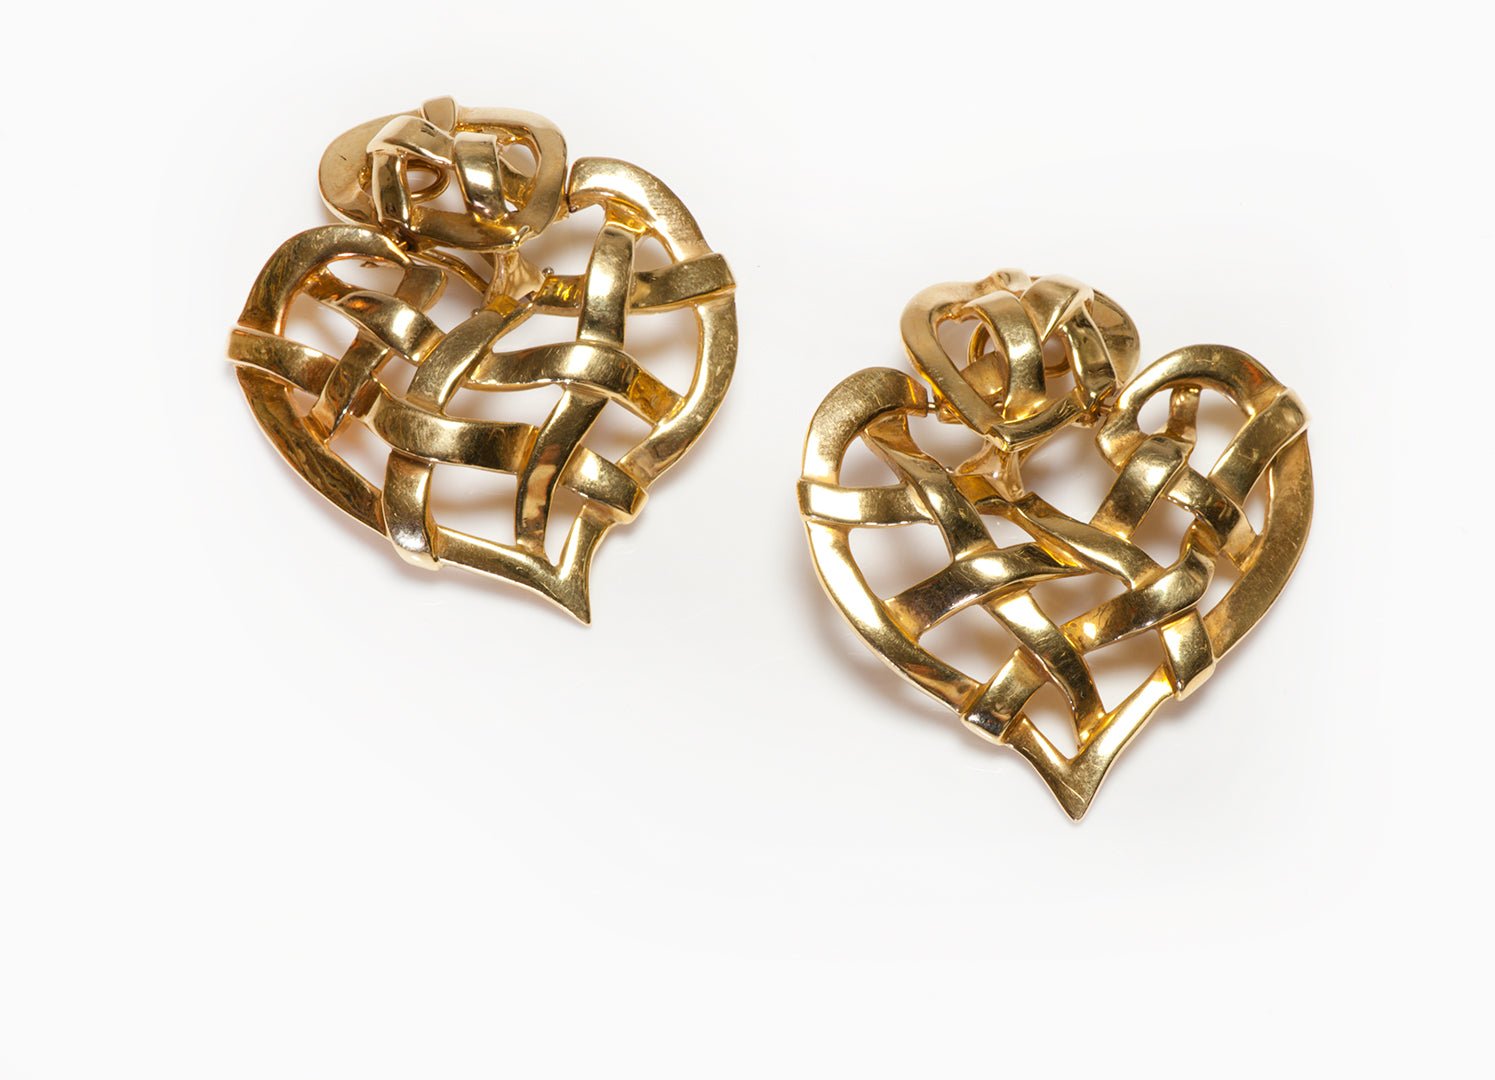 Boris LeBeau 18K Yellow Gold Heart Shaped Earrings - DSF Antique Jewelry